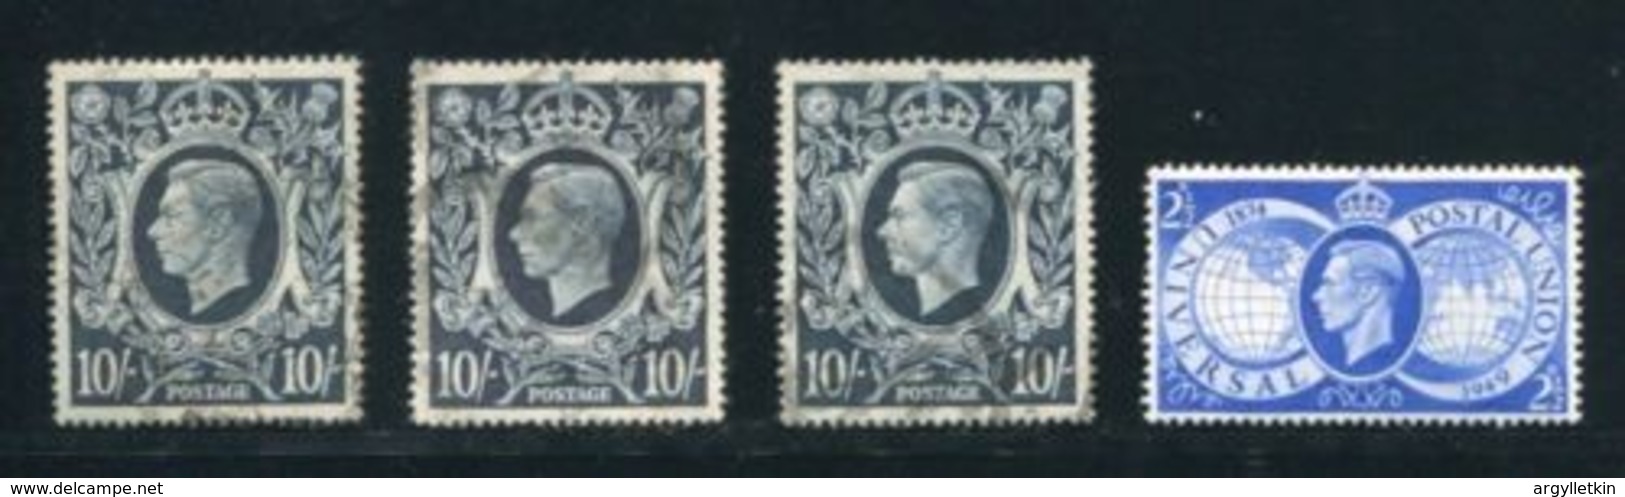 GB KING GEORGE 6TH 10 SHILLING VARIETIES - Unused Stamps